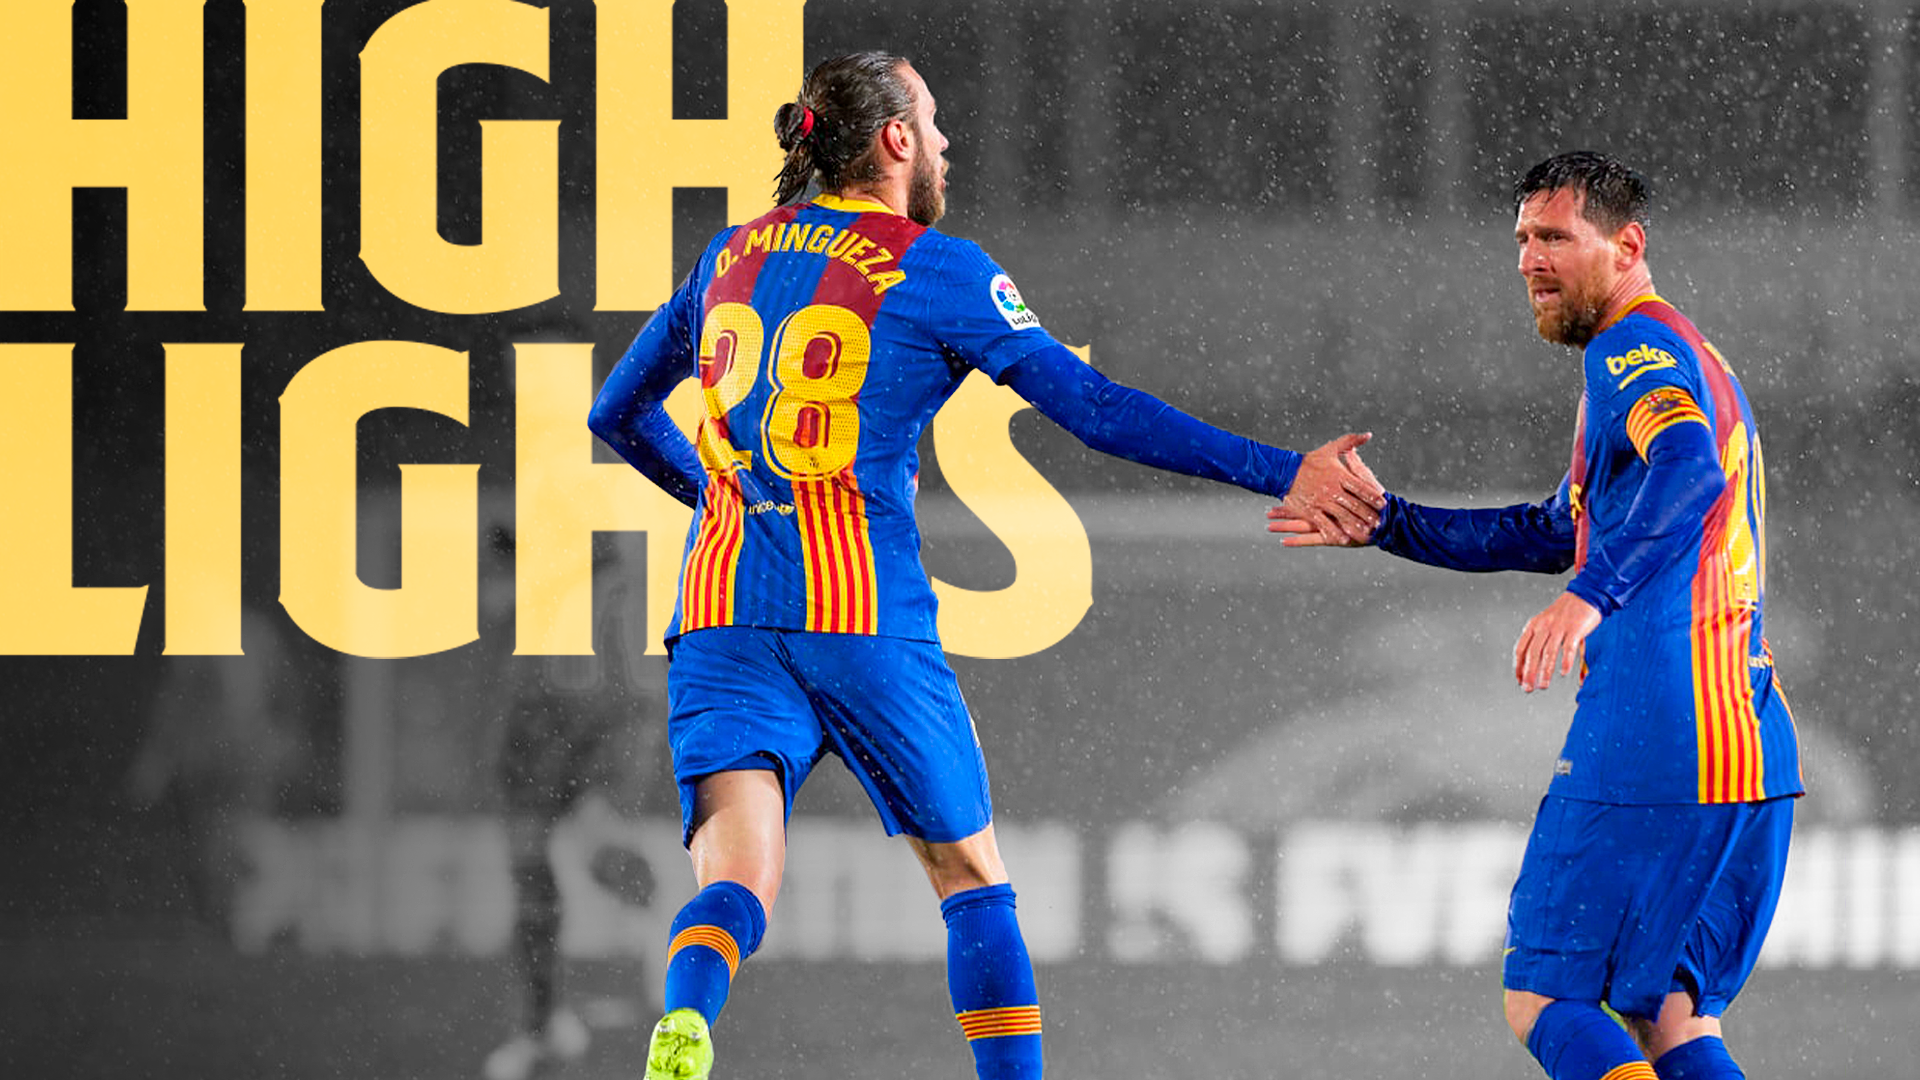 HIGHLIGHTS | Real 2-1 | La Liga 20/21